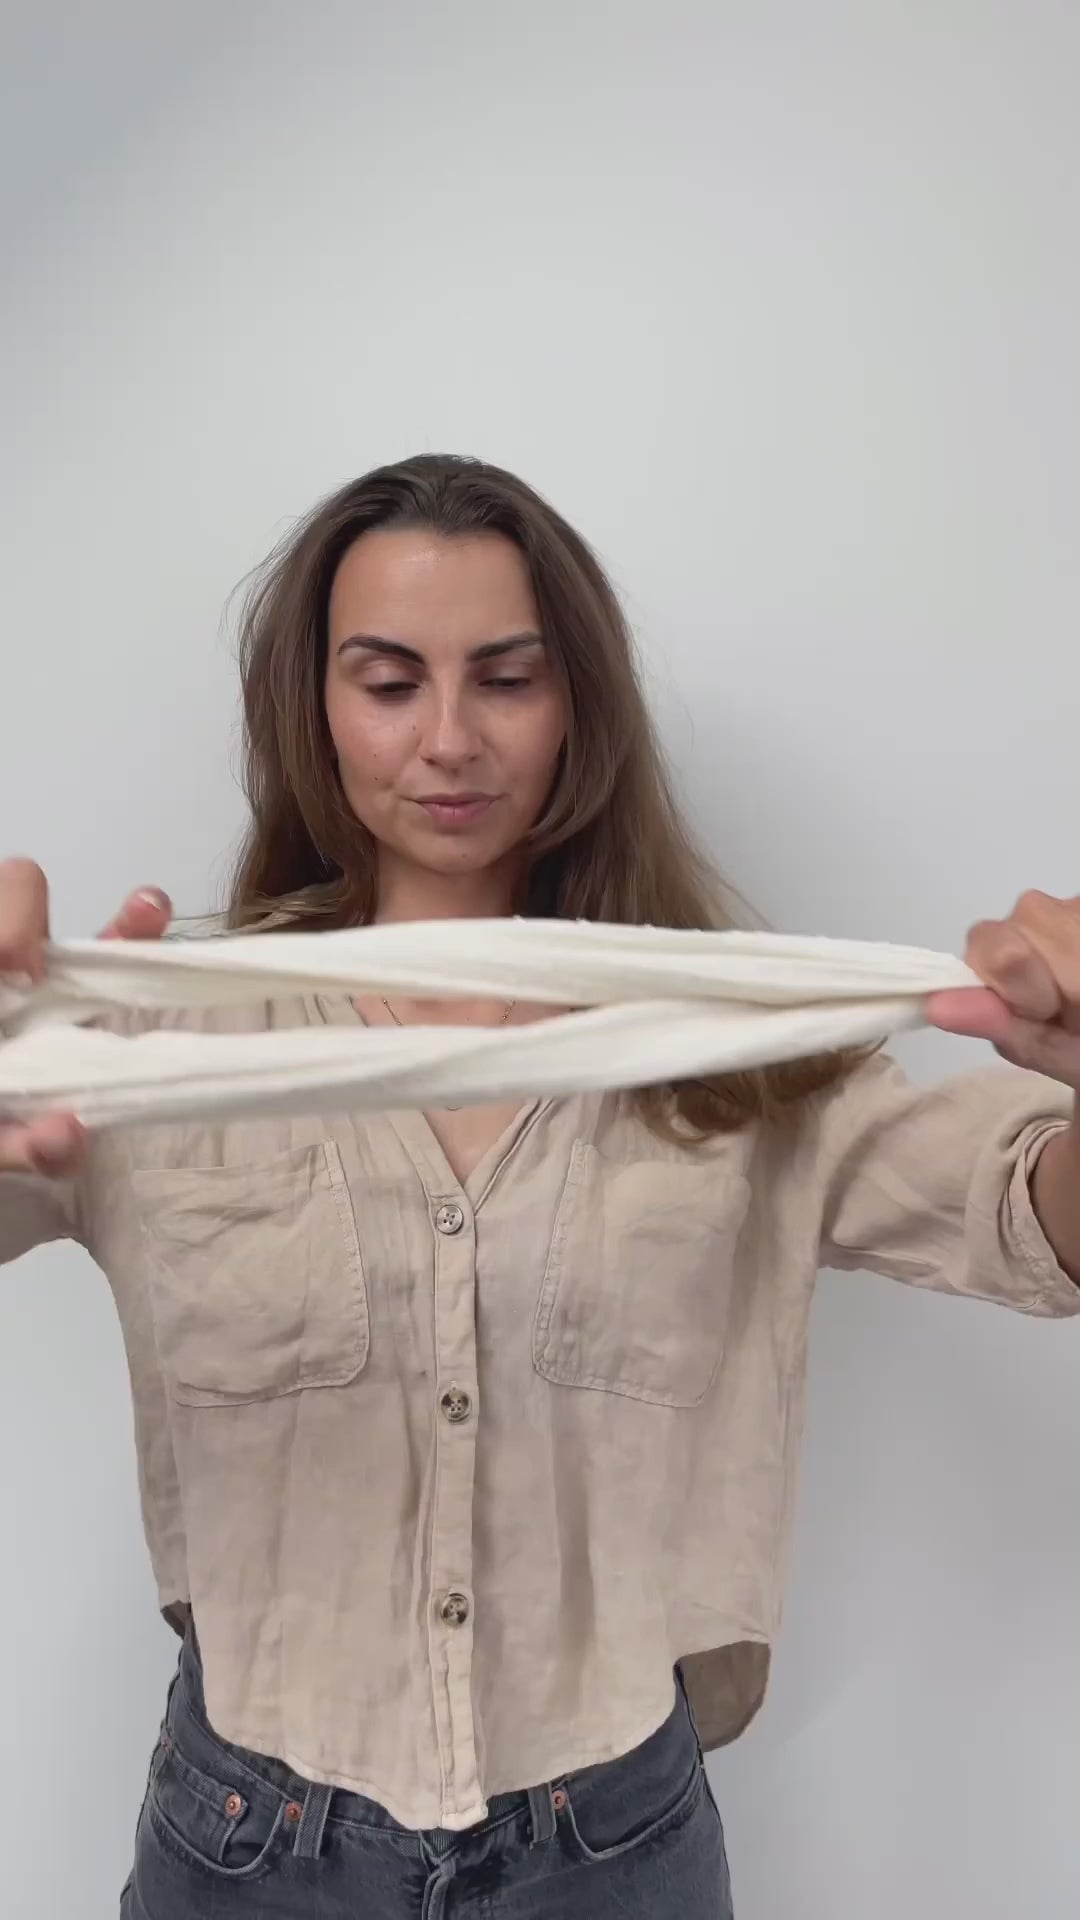 Load video: Vor einem weißen Hintergrund bindet sich eine Frau mit einem cremefarbenen Drahthaarband eine Duttfrisur.